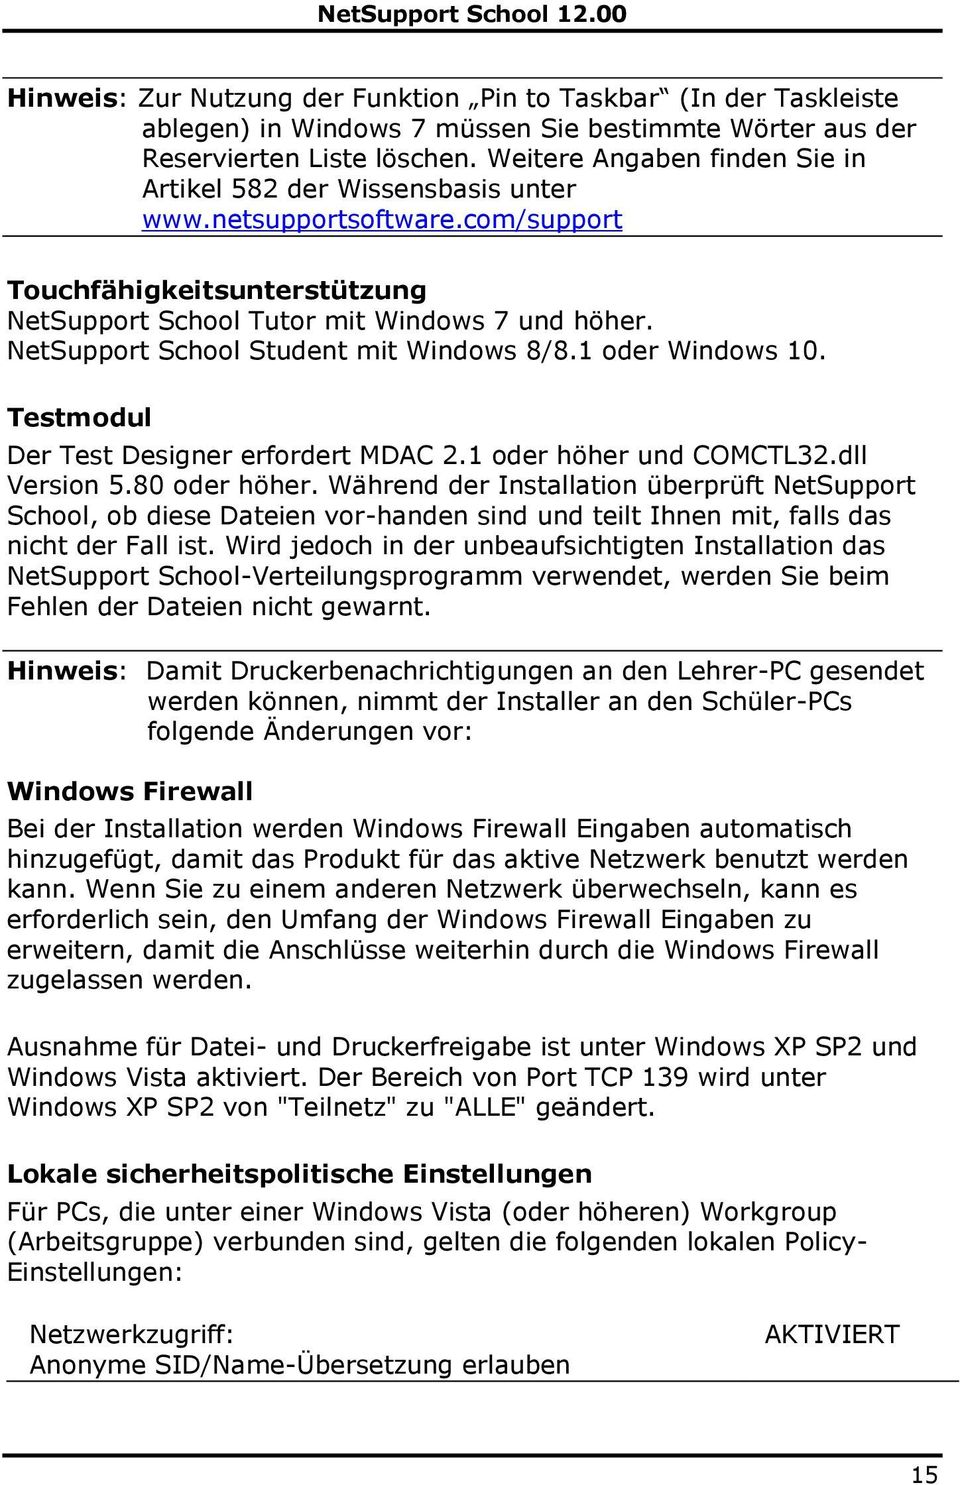 NetSupport School Student mit Windows 8/8.1 oder Windows 10. Testmodul Der Test Designer erfordert MDAC 2.1 oder höher und COMCTL32.dll Version 5.80 oder höher.